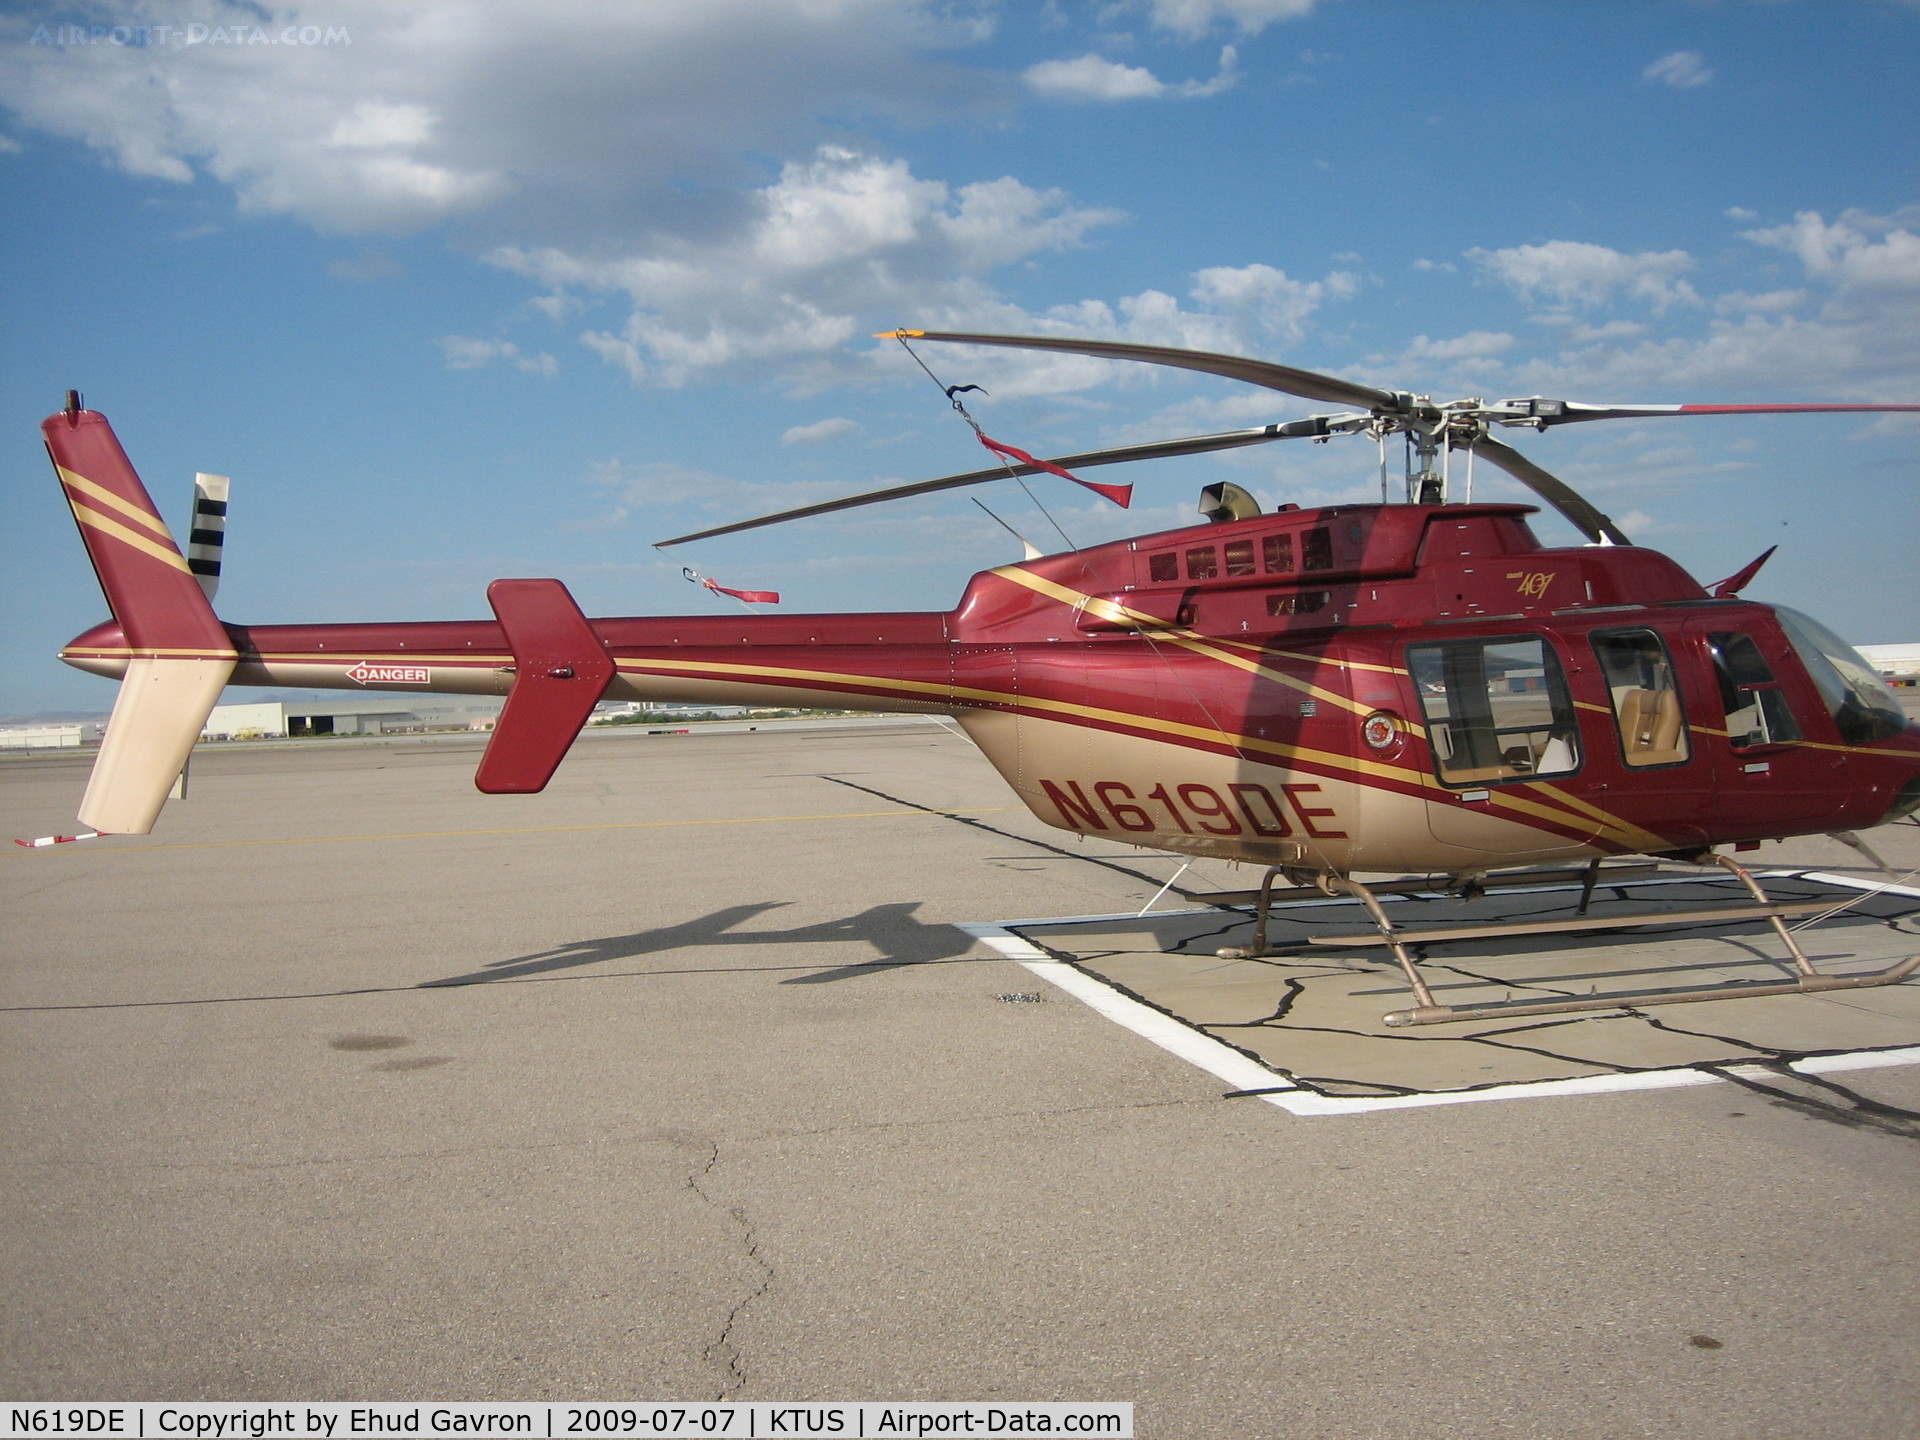 N619DE, 2000 Bell 407 C/N 53410, N619DE on the pad at KTUS